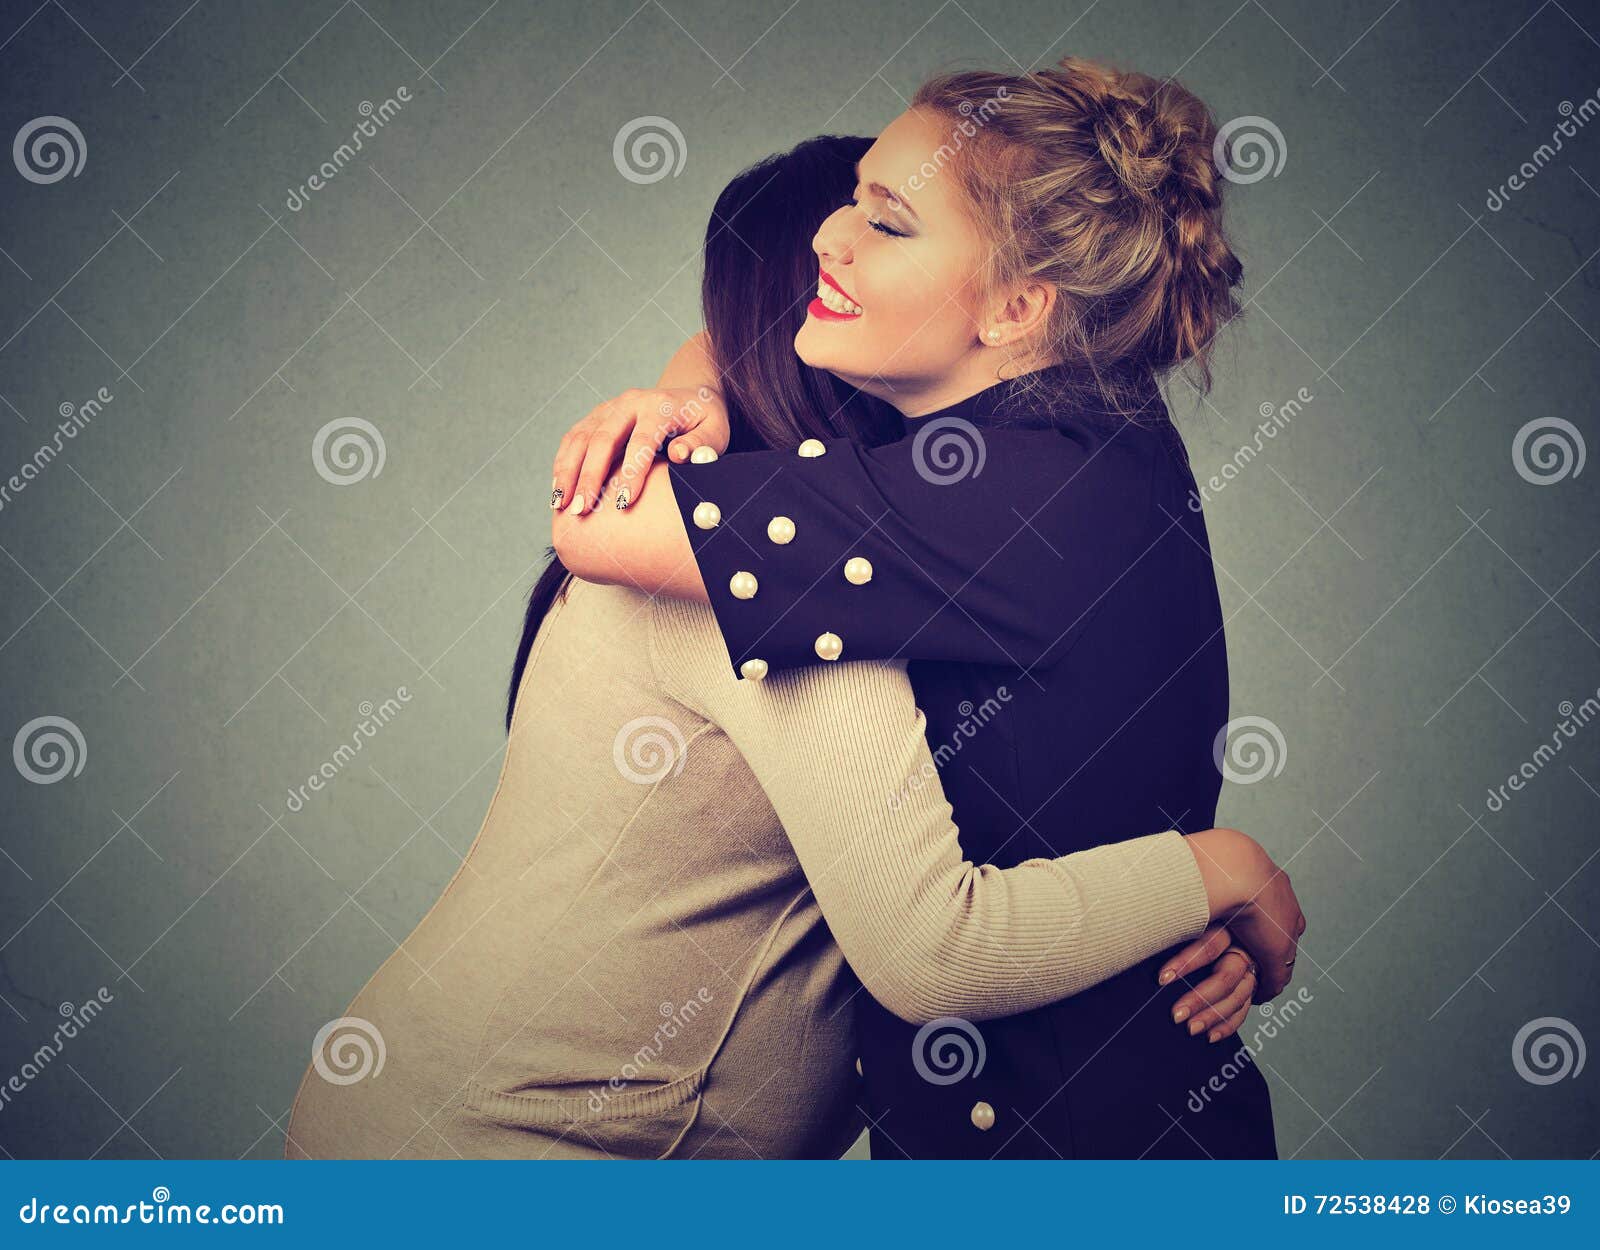 two friends women hugging